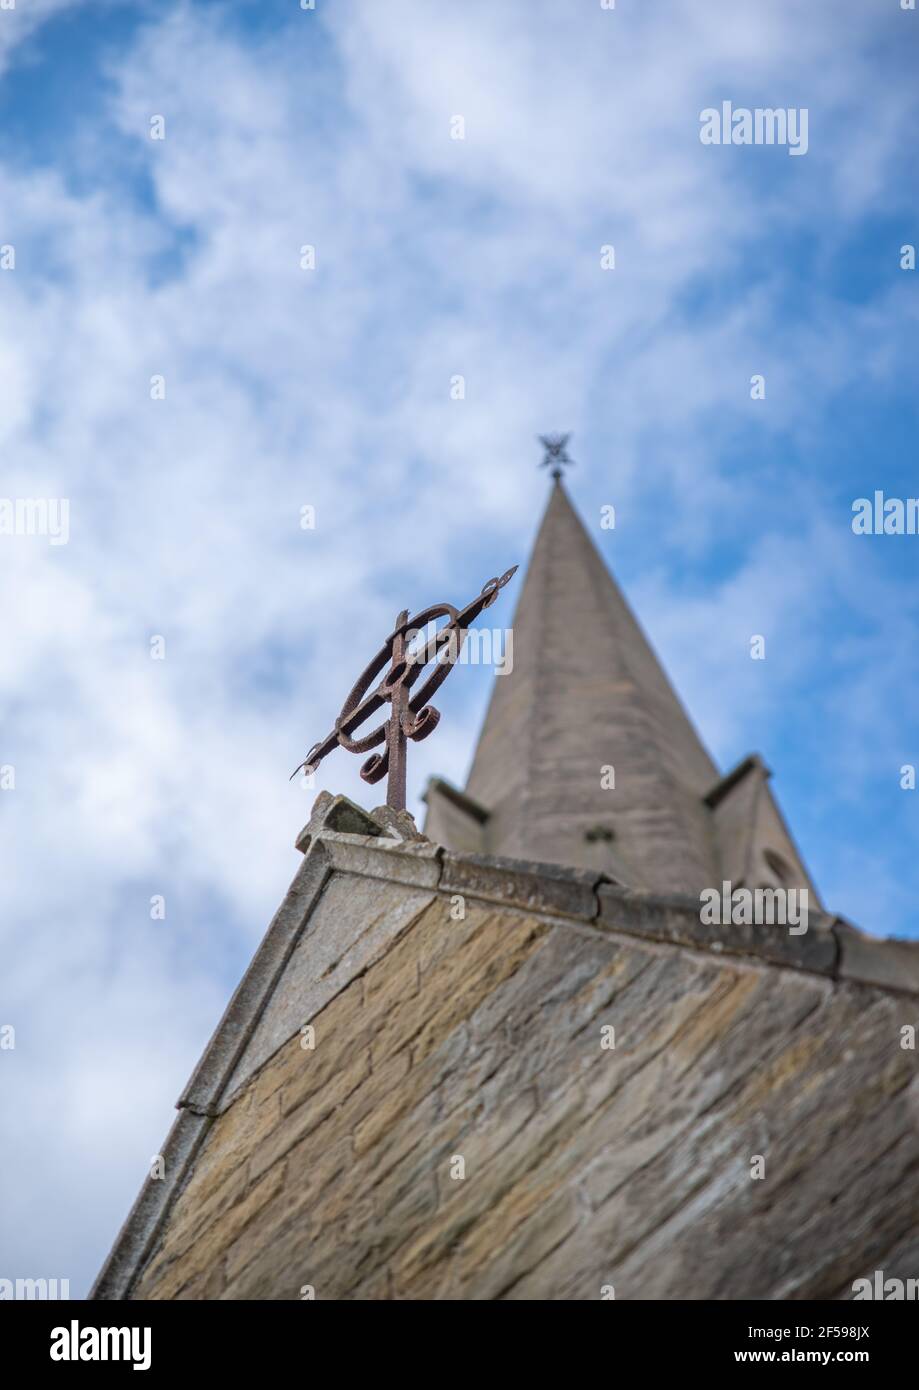 Símbolo de cruz desde abajo mirando a un campanario de la iglesia con un fondo azul cielo nublado. Foto de stock